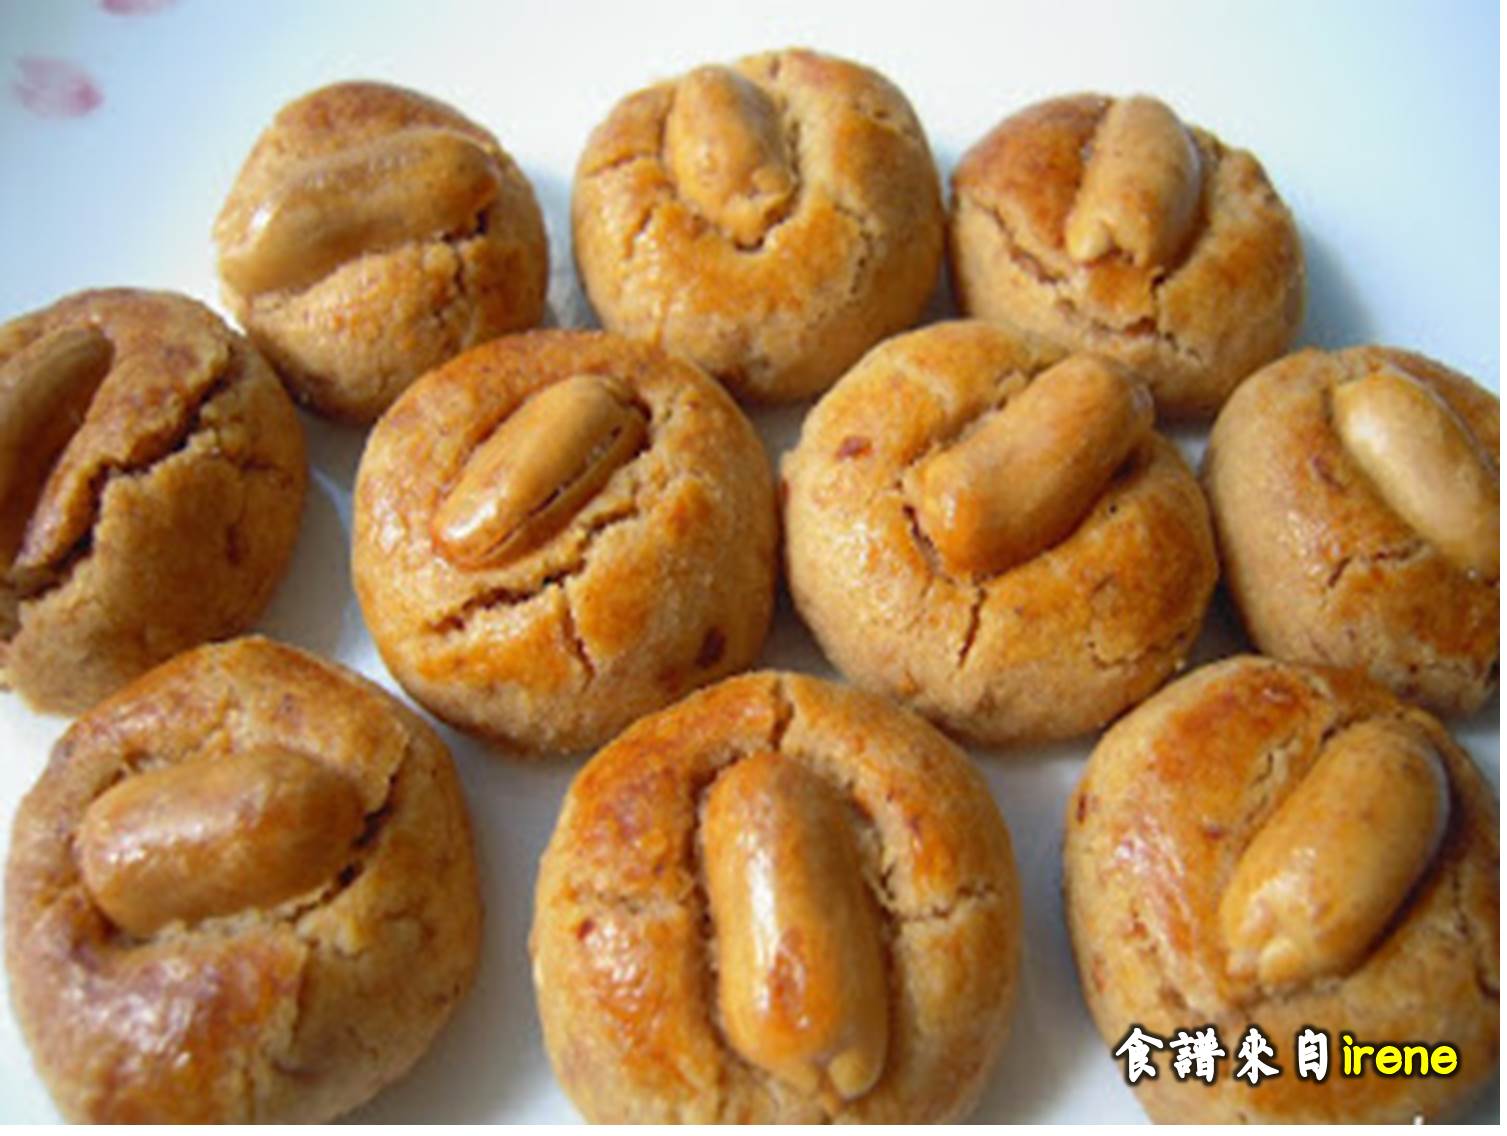 爱厨房的幸福之味: 传统花生饼 Traditional Peanut Cookie